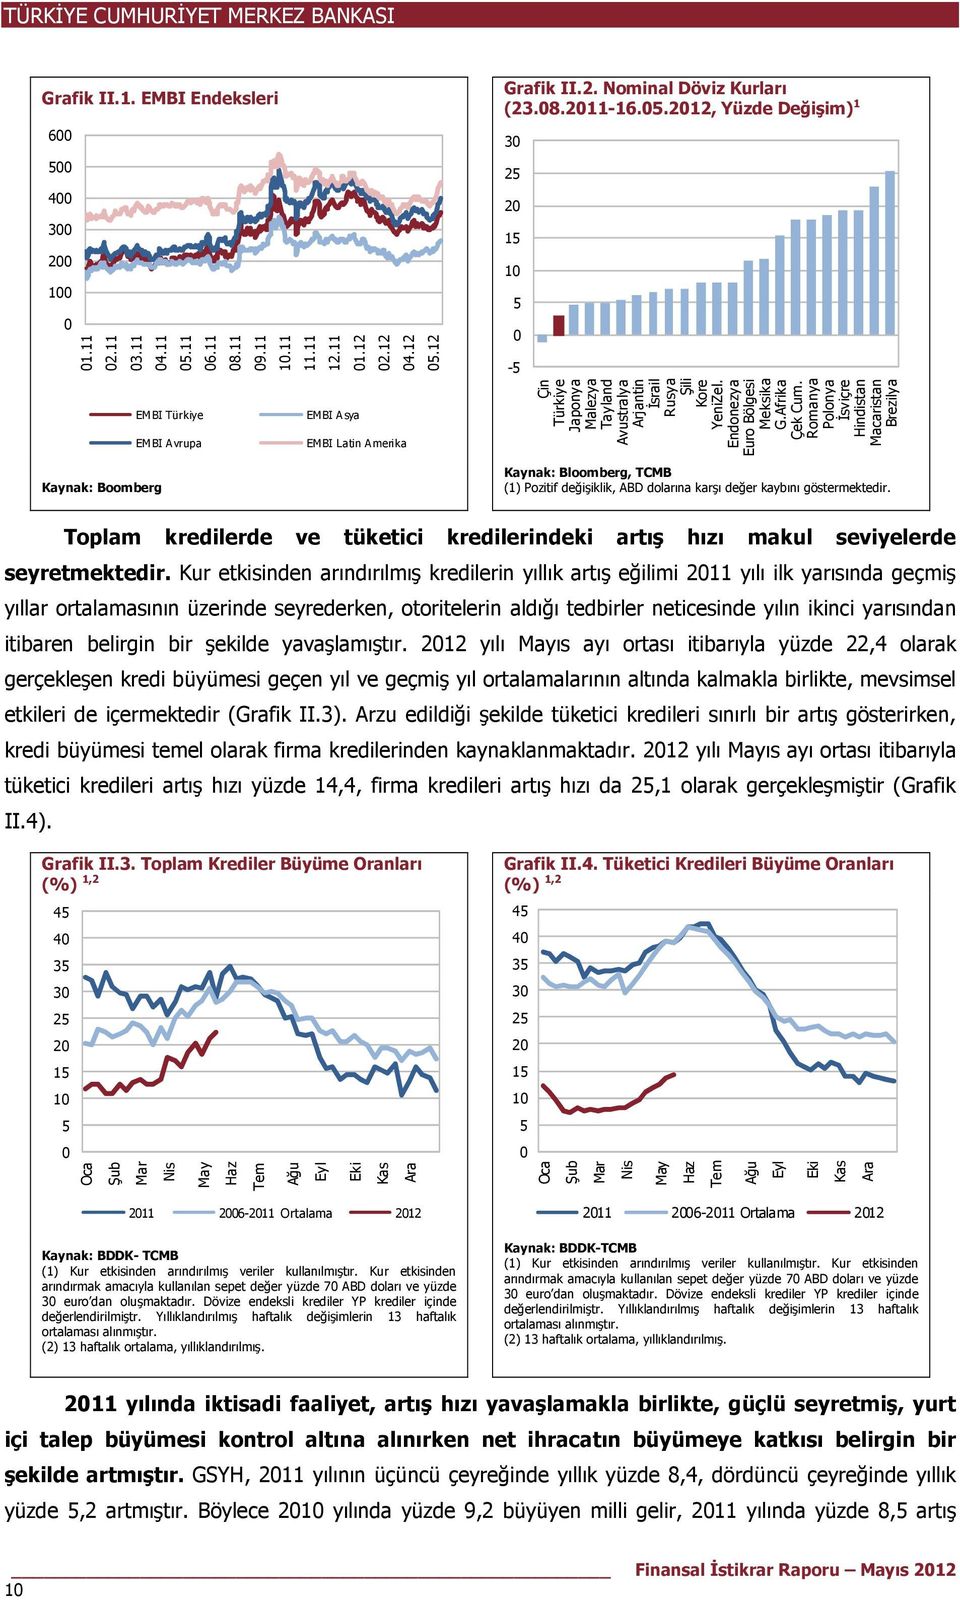 Romanya Polonya İsviçre Hindistan Macaristan Brezilya Kaynak: Bloomberg, TCMB (1) Pozitif değişiklik, ABD dolarına karşı değer kaybını göstermektedir.